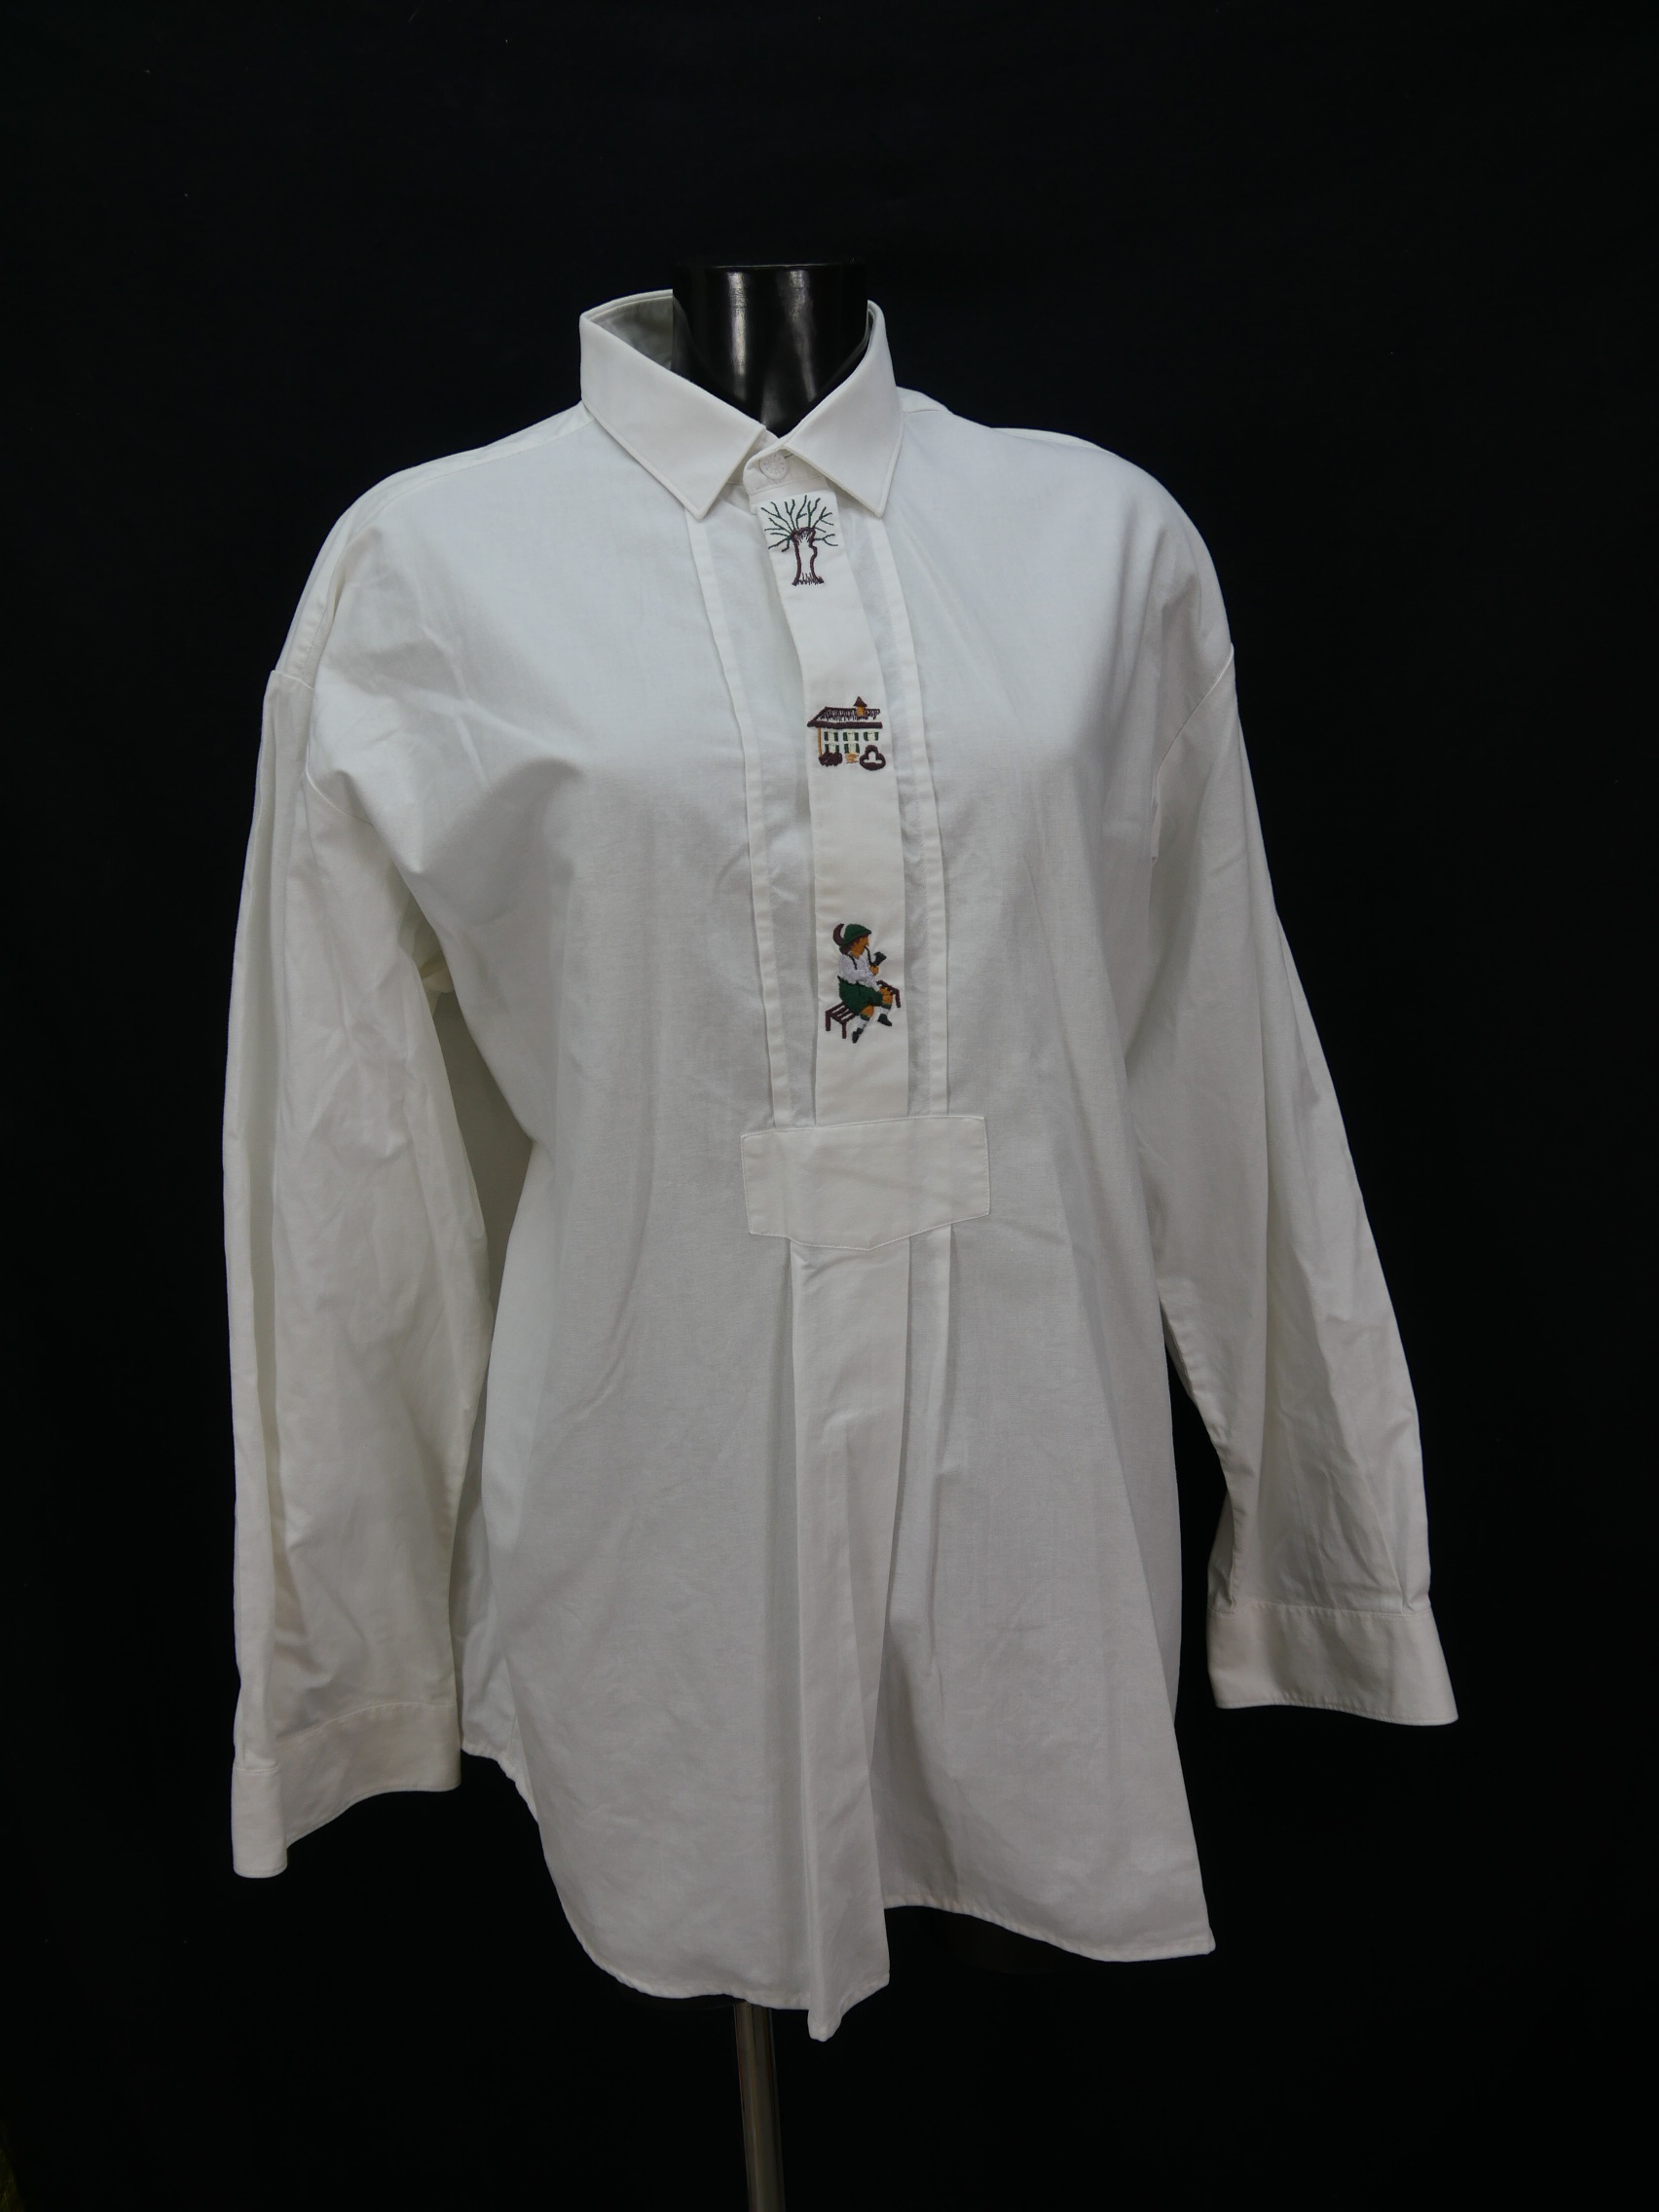 Gr.XL Trachtenhemd Trachten Style weiß Baumwolle Bauern Stickerei Hemd TH1469